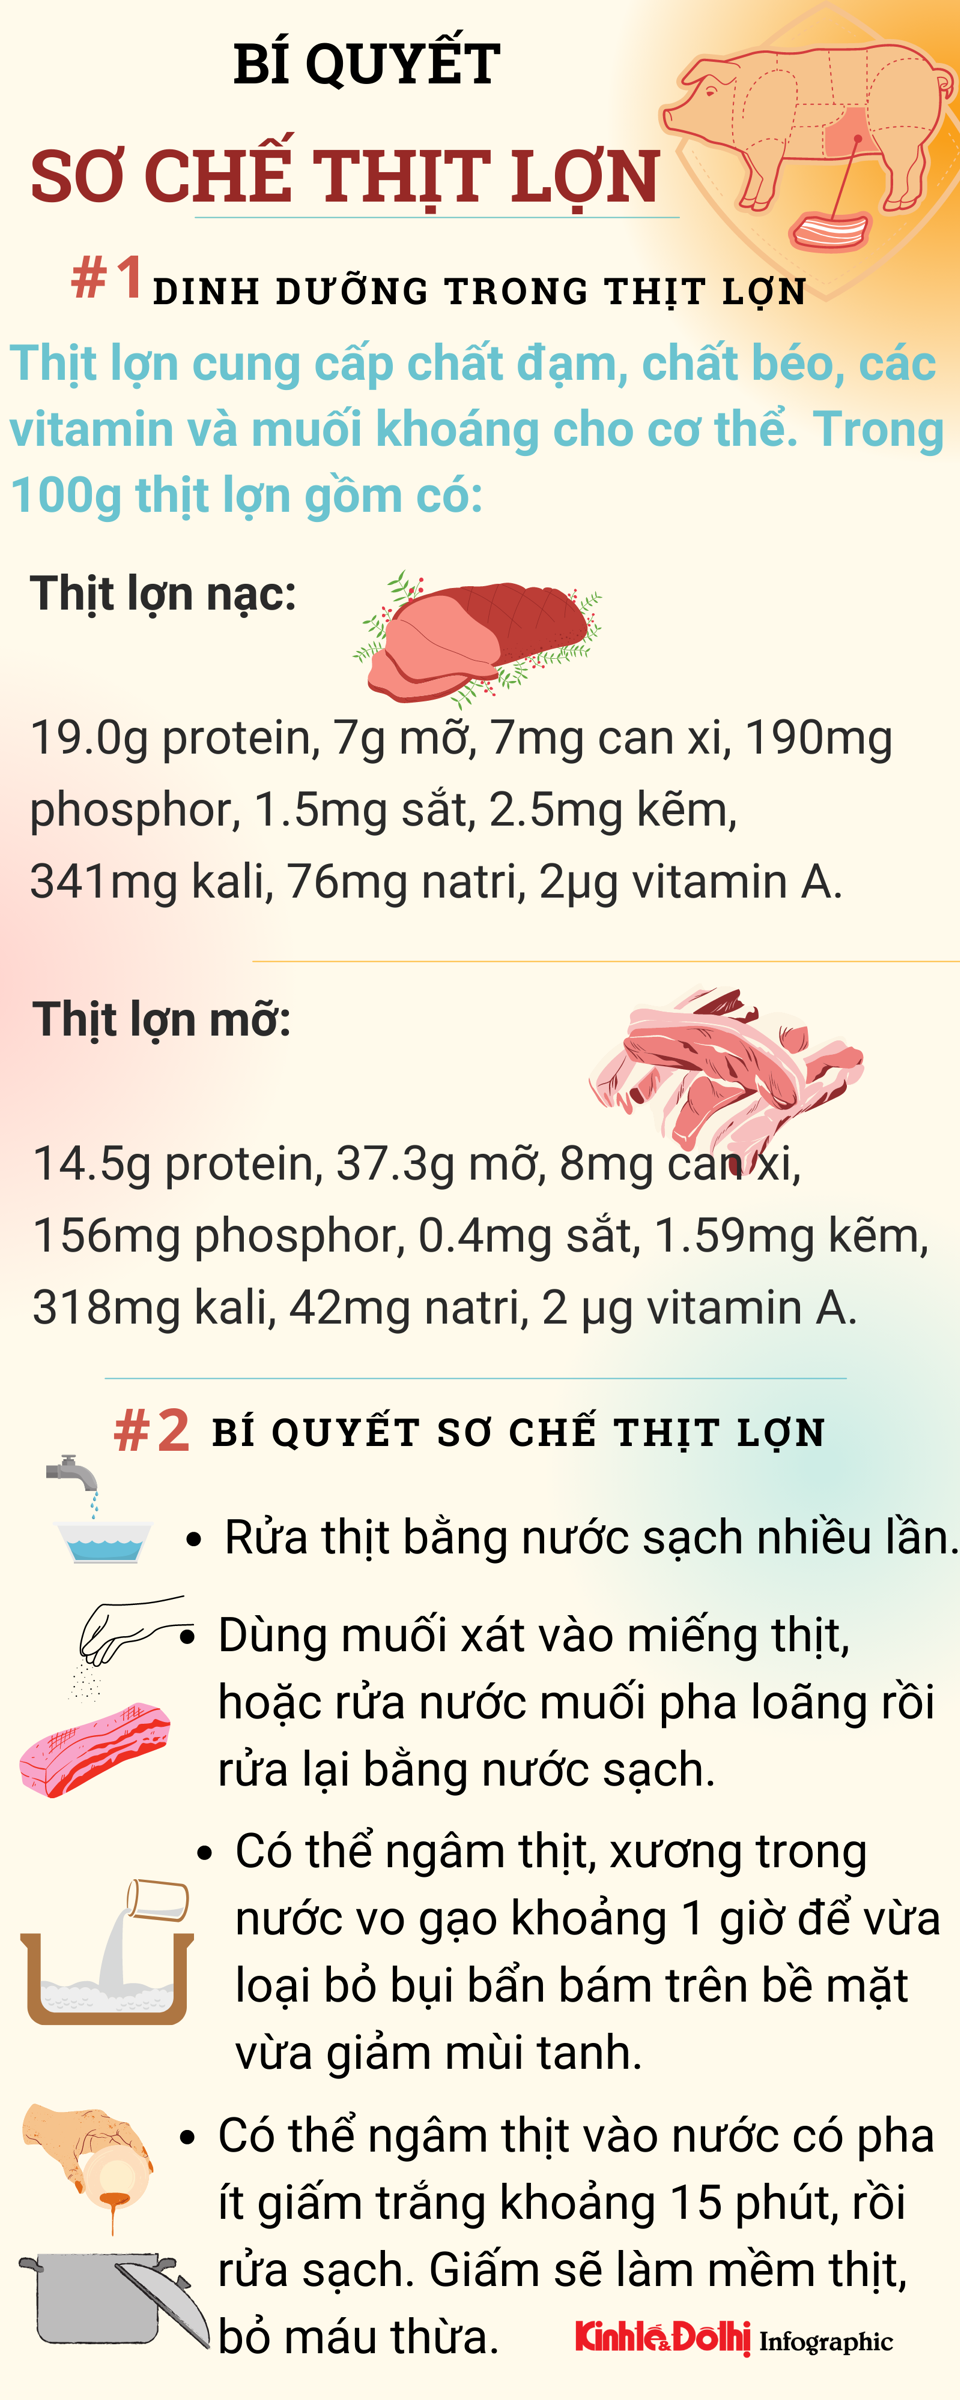 [Infographic] Bí quyết sơ chế thịt lợn để giữ được dinh dưỡng, có lợi cho sức khỏe - Ảnh 1